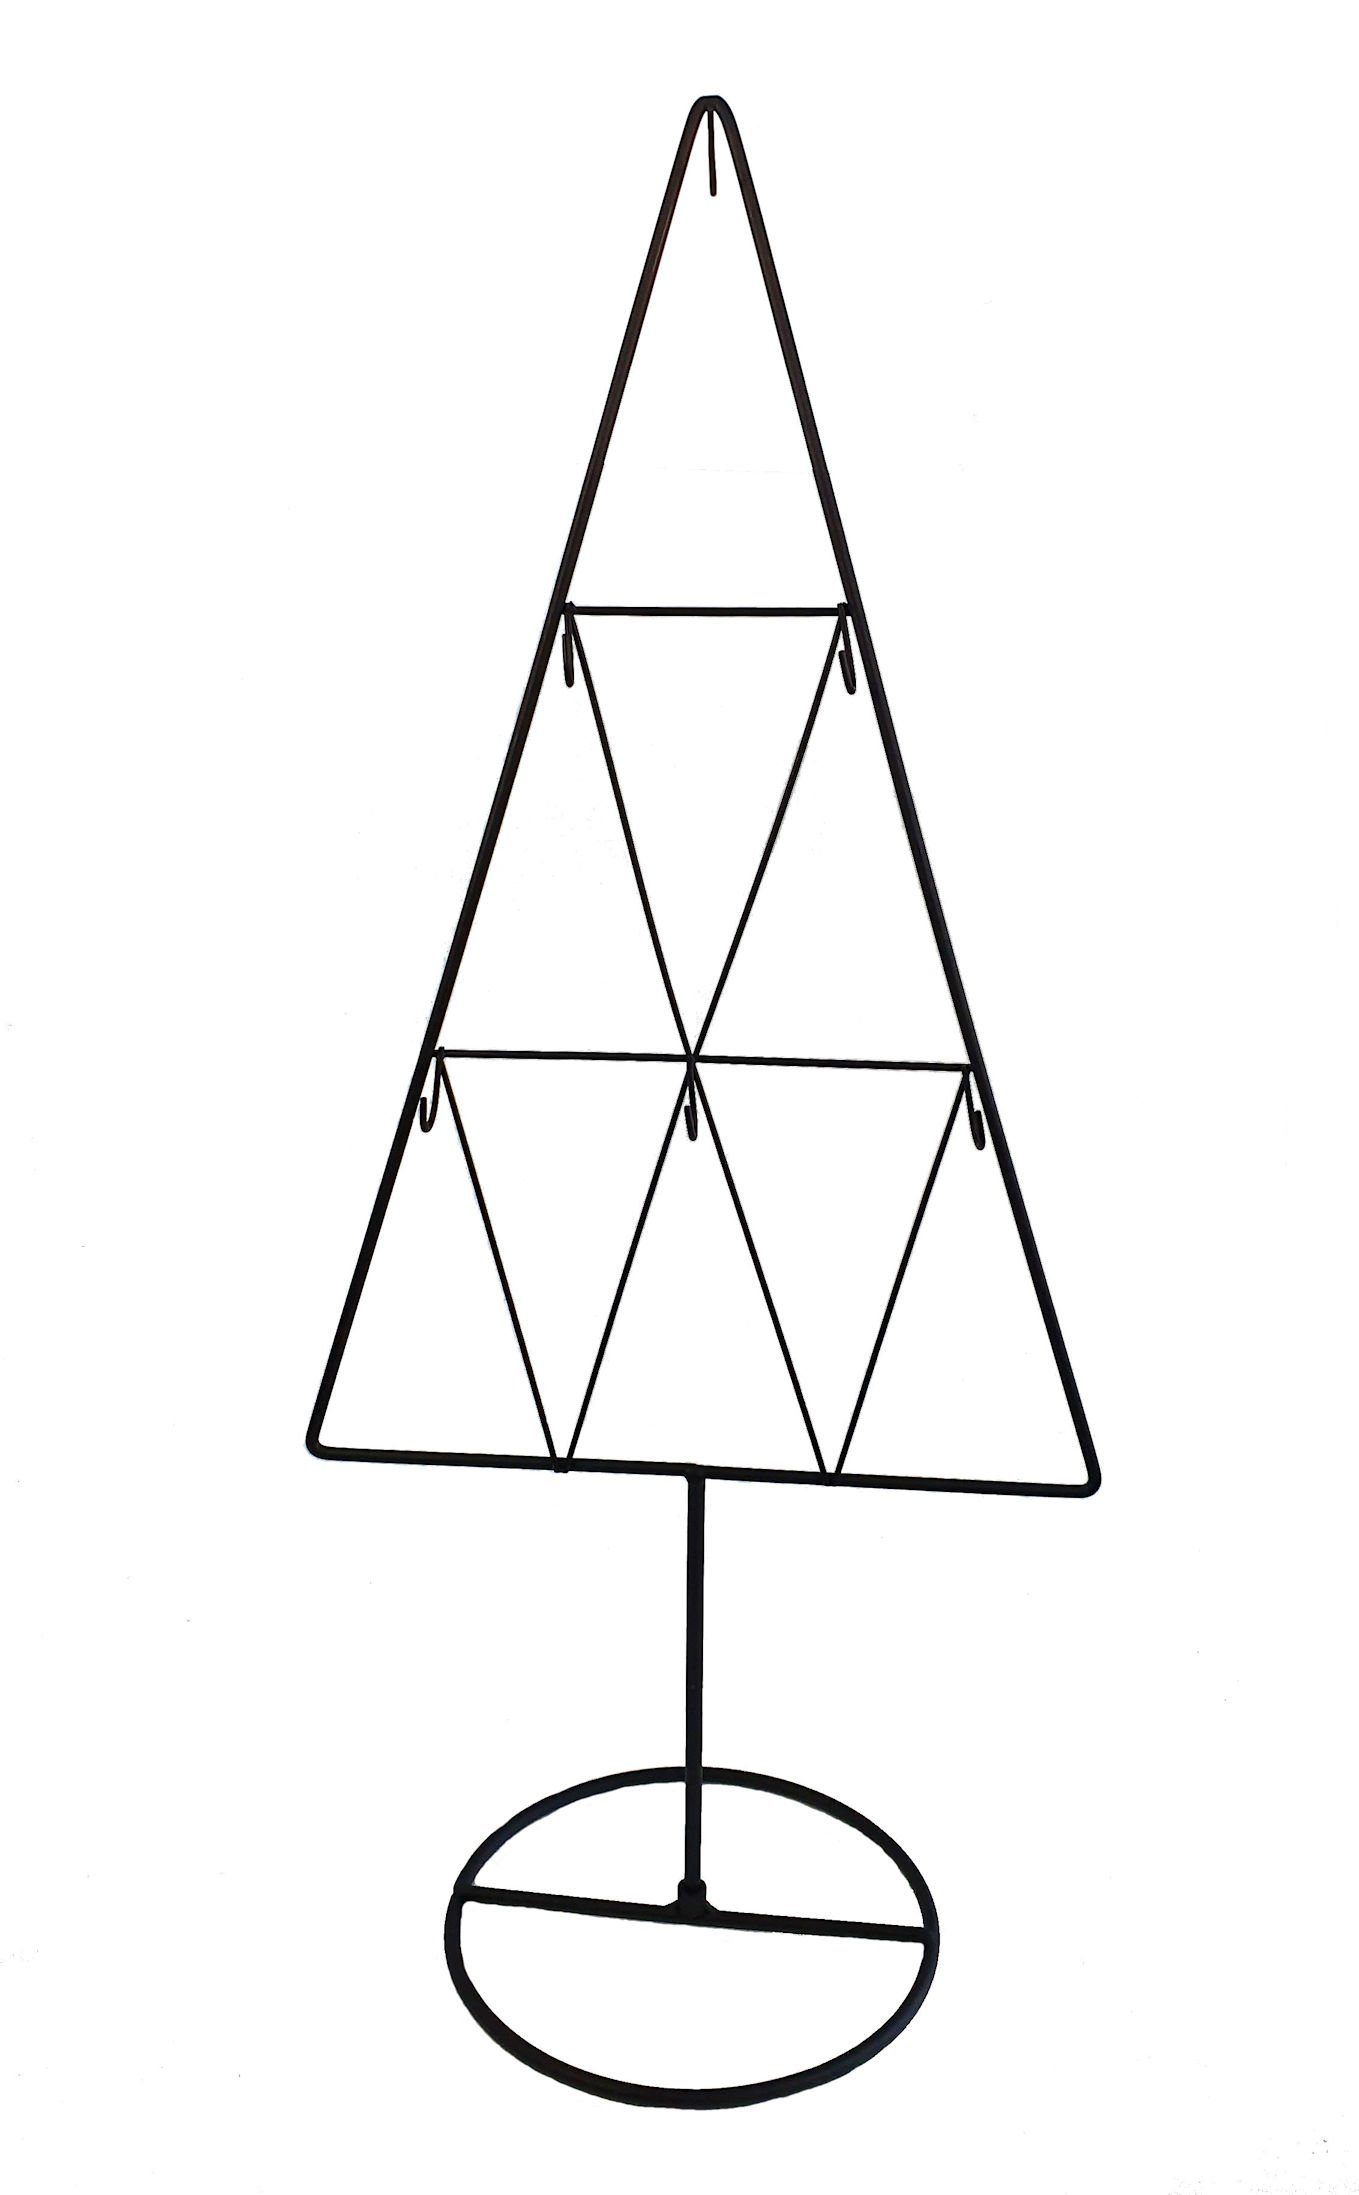 Spetebo Weihnachtskugelständer Kleiner Metall Tannenbaum mit 6 Haken, Tannenbaum Form mit 6 Haken zum Beschmücken - Deko Ständer für Weihnachtsschmuck